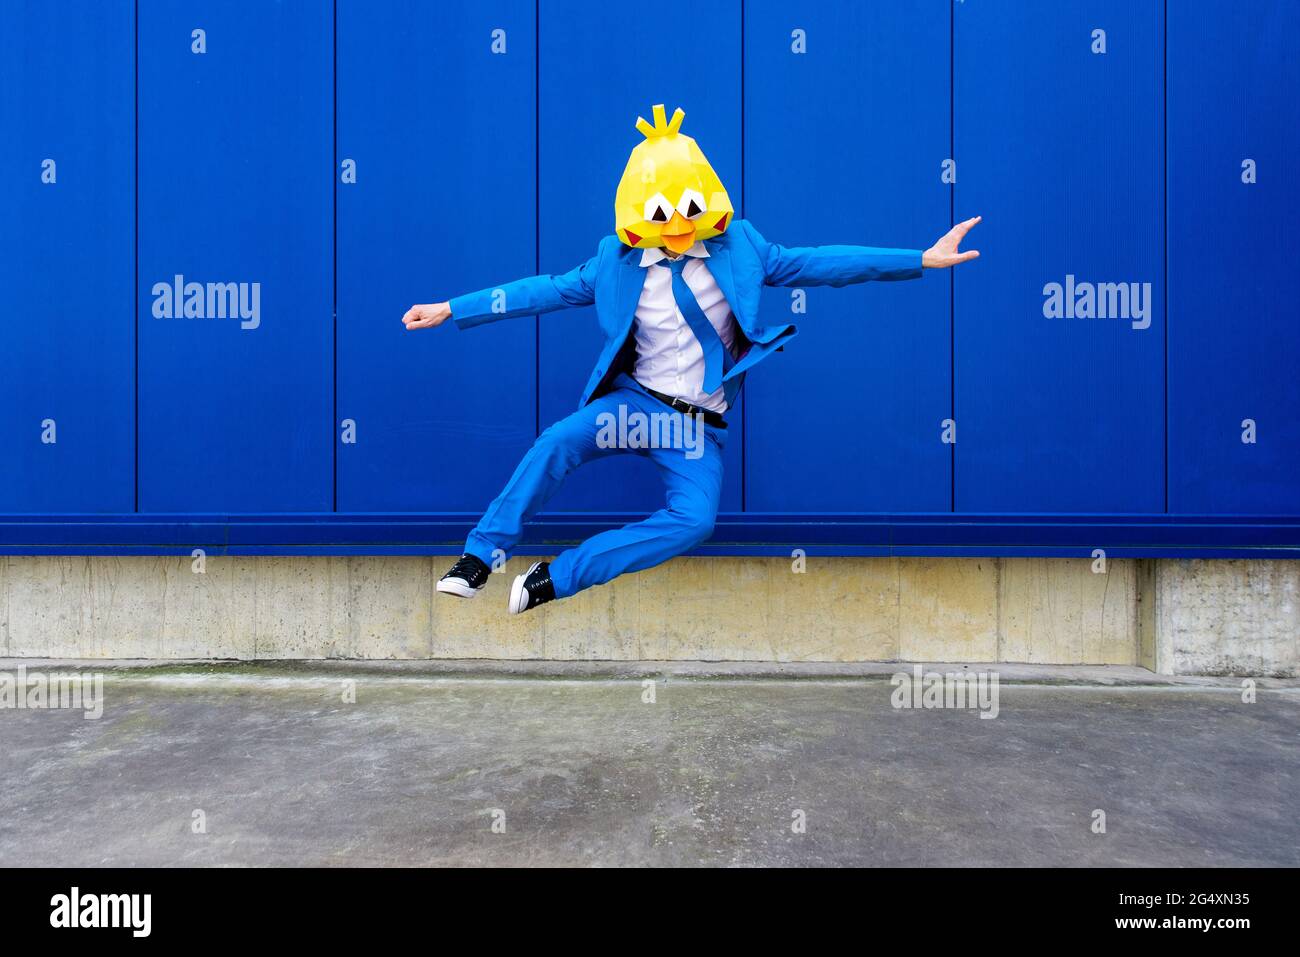 Homme portant un costume bleu vif et un masque d'oiseau sautant contre le mur bleu Banque D'Images